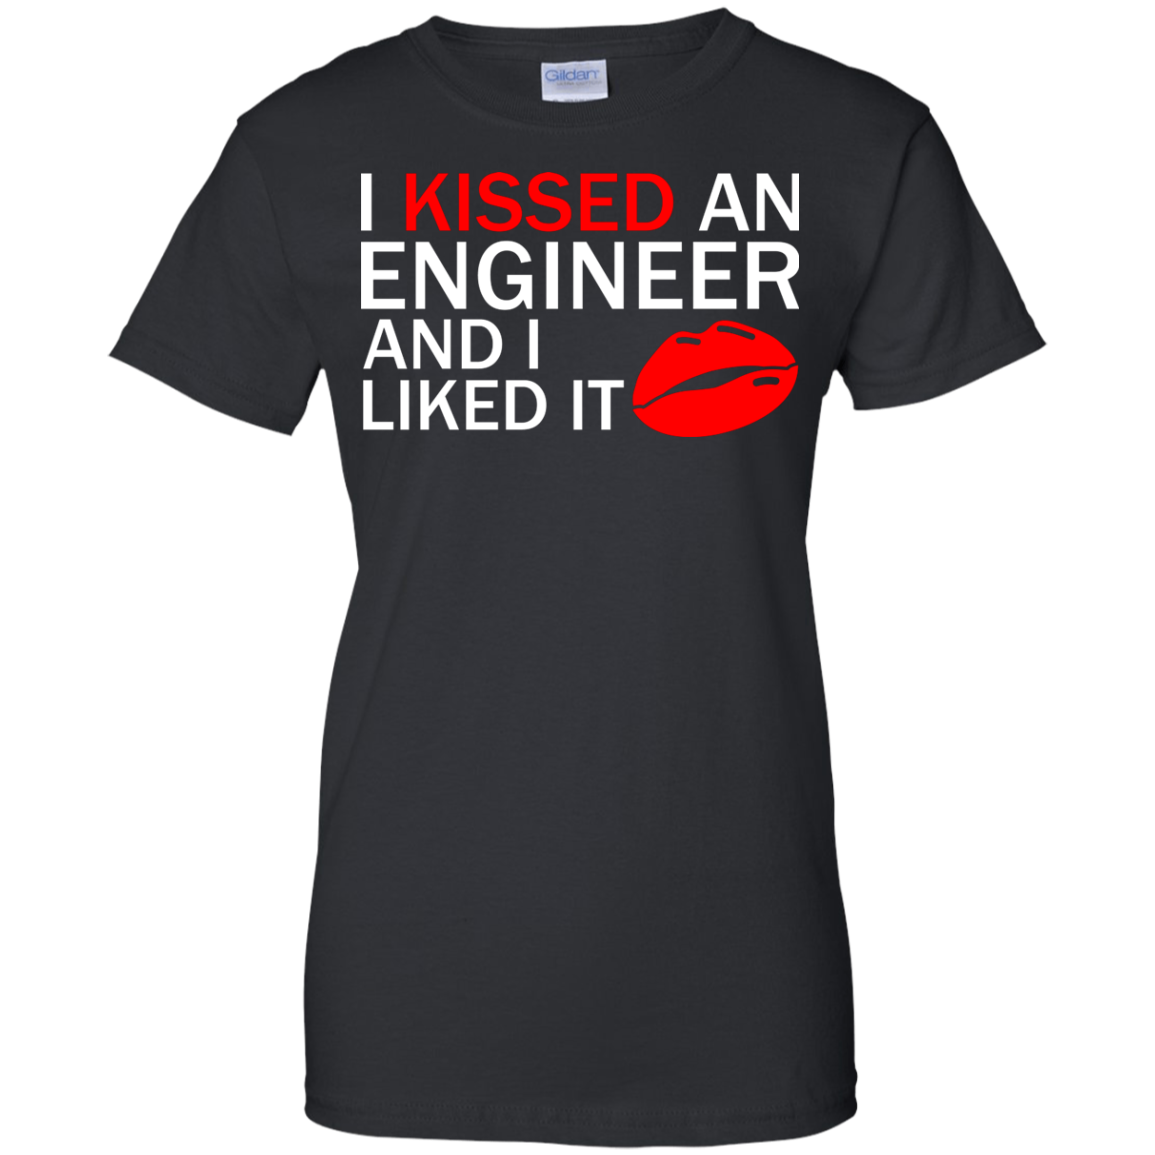 Besé a un ingeniero y me gustó